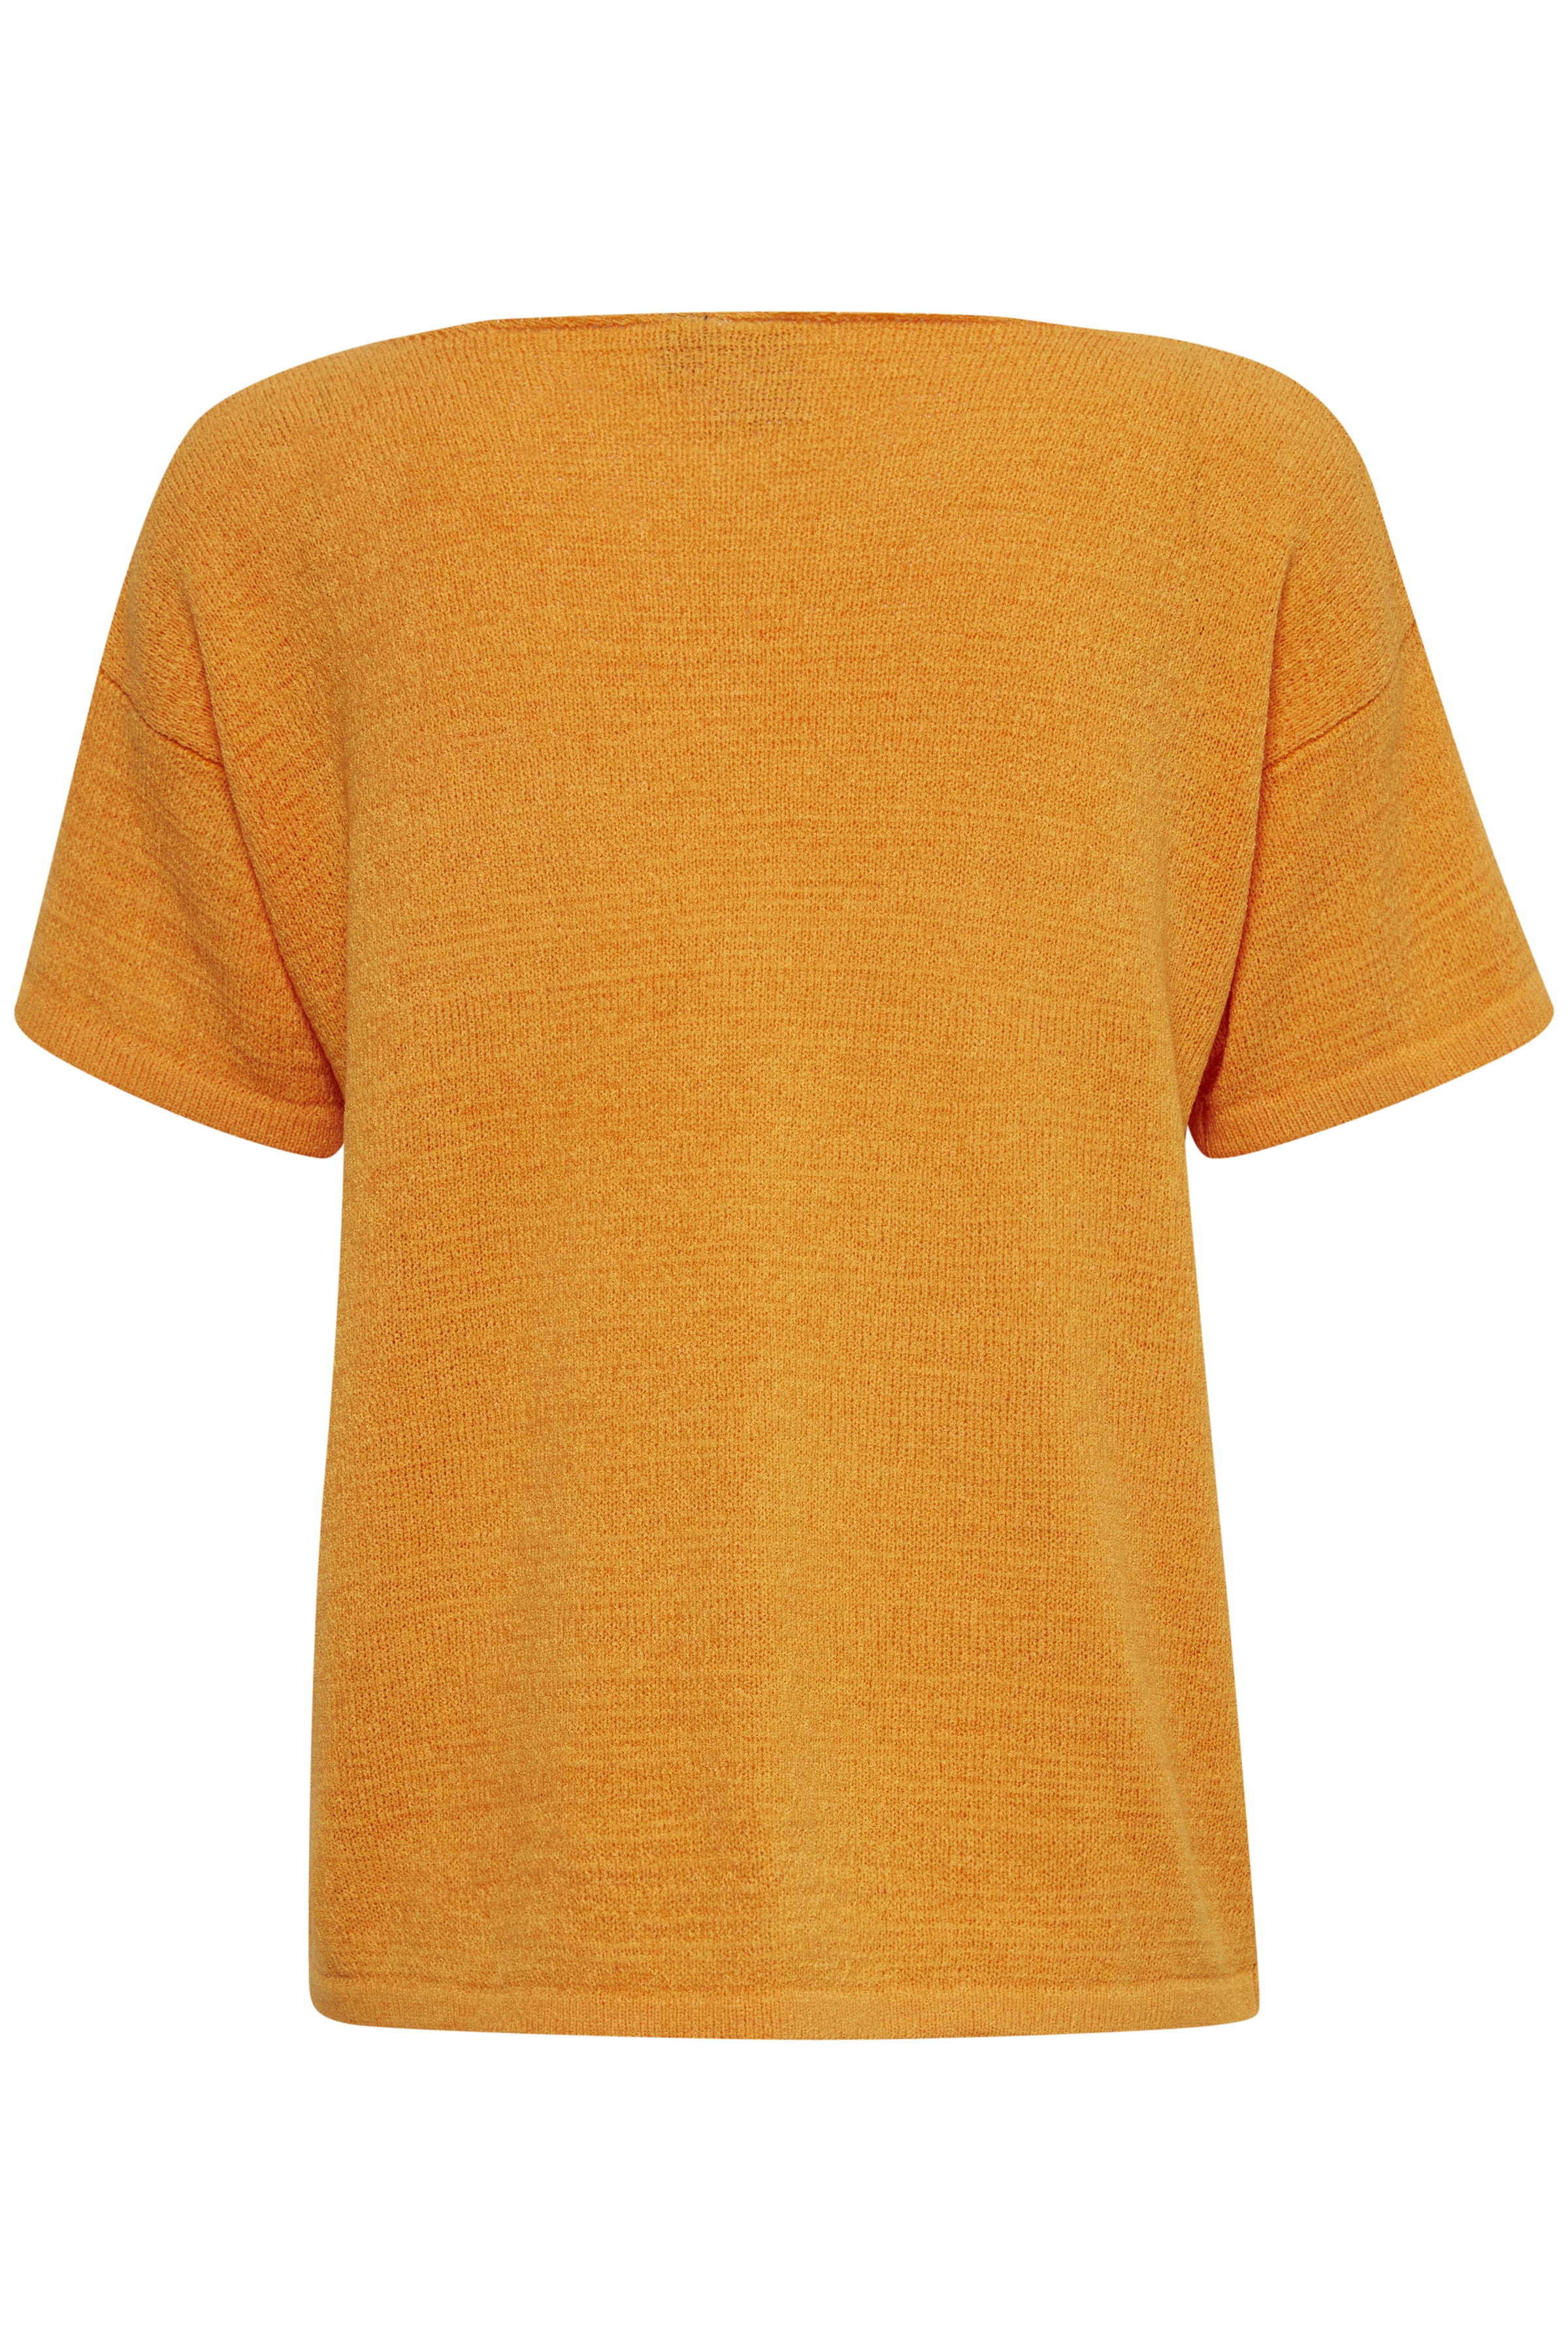 Perdie Knit Top (Orange)